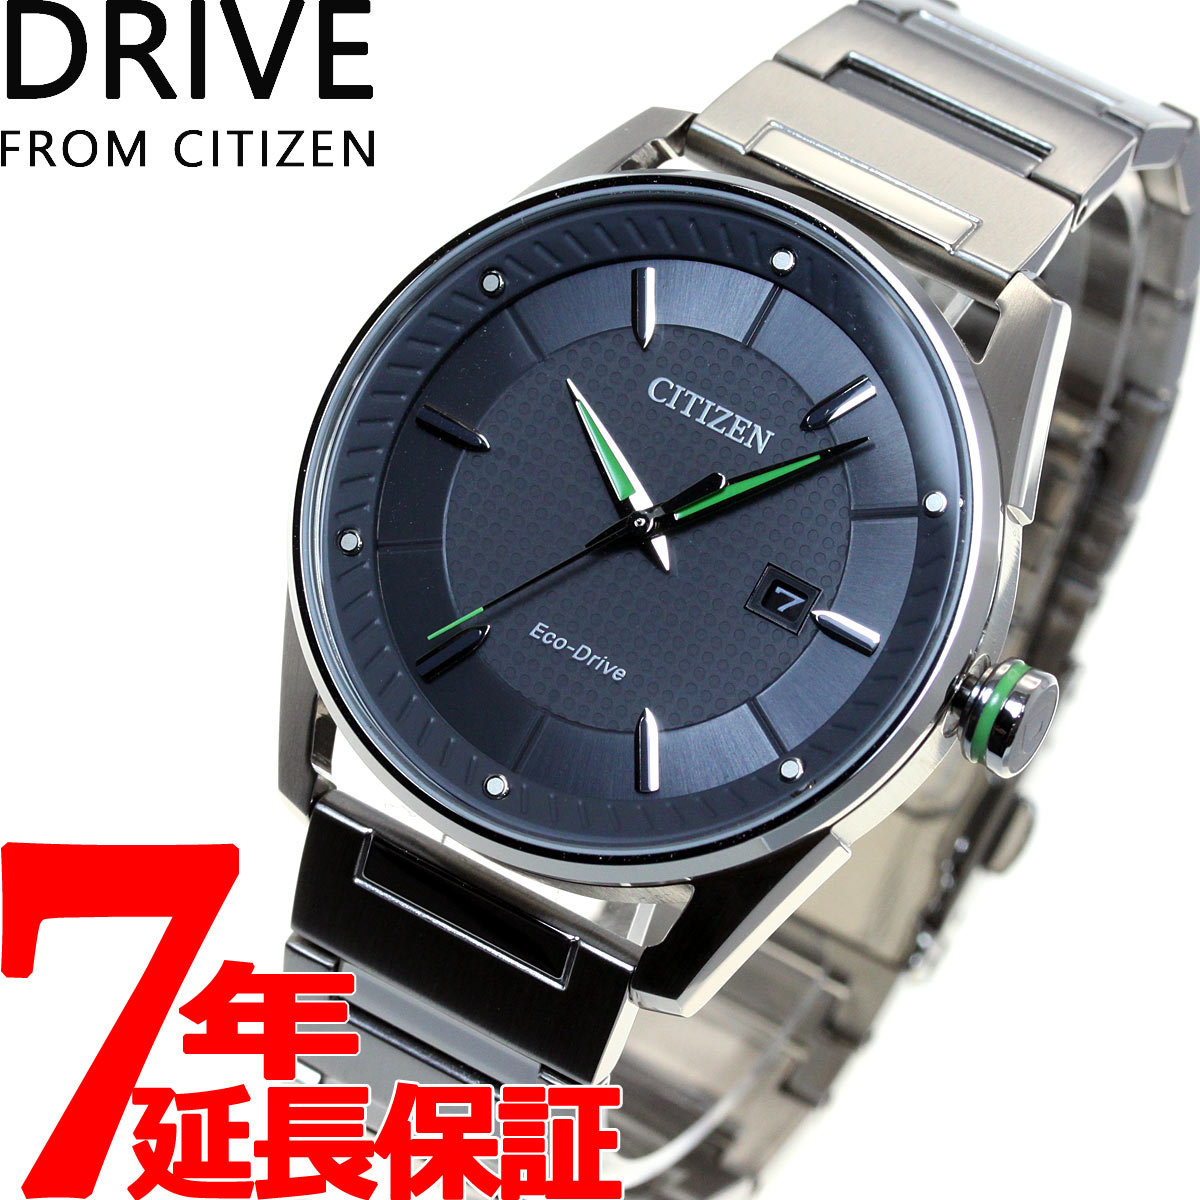 DRIVE FROM CITIZEN ドライブ フロム シチズン エコドライブ 腕時計 メンズ メタル BM6980-59H